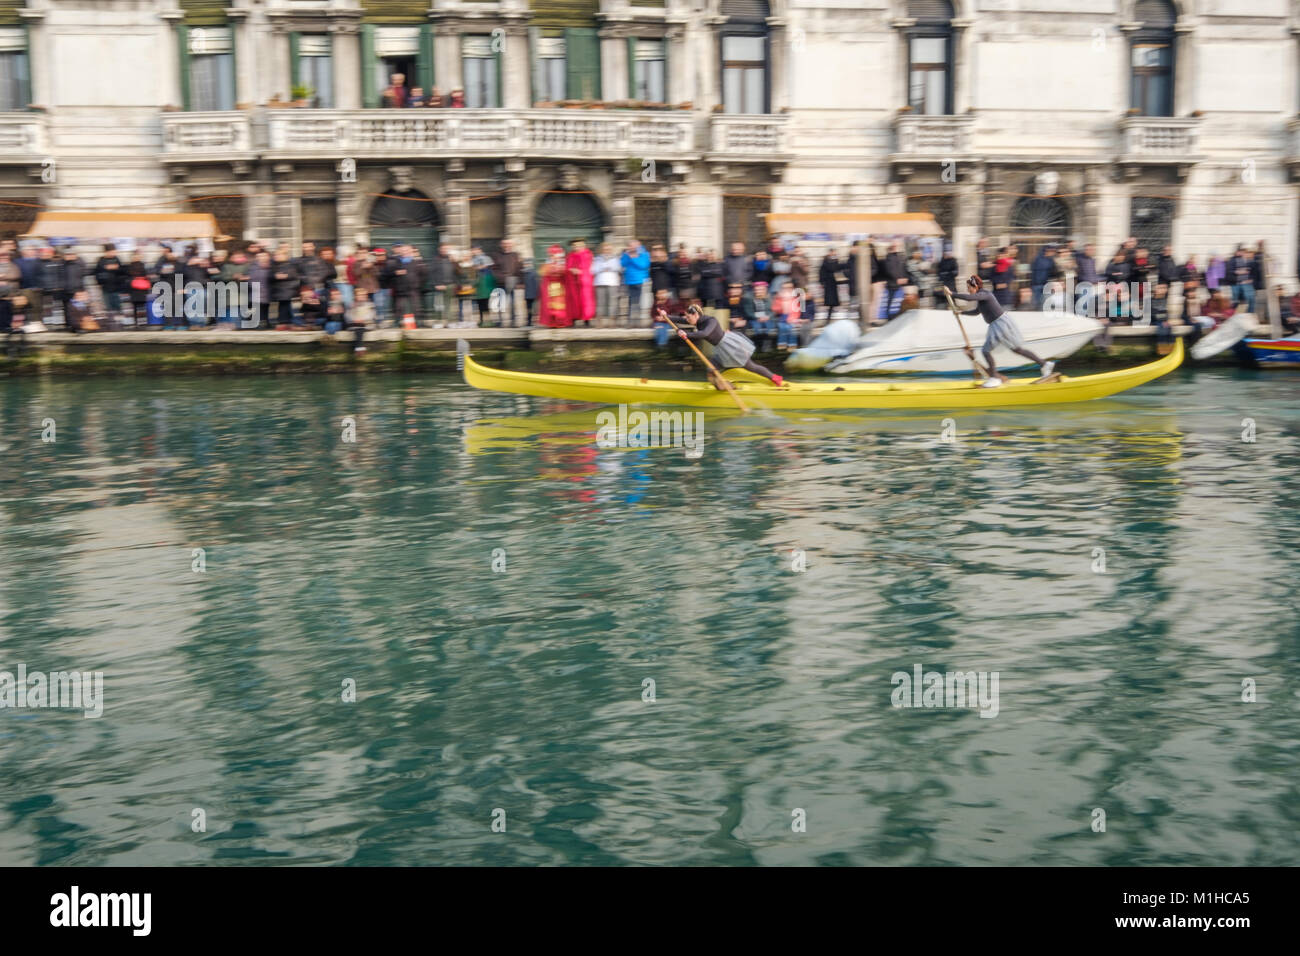 Les équipages féminins à bord du bateau "gondolini typique de Venise' généralement menées par les hommes. Carnaval de Venise 2018, Italie, 28 janvier 2018. Banque D'Images